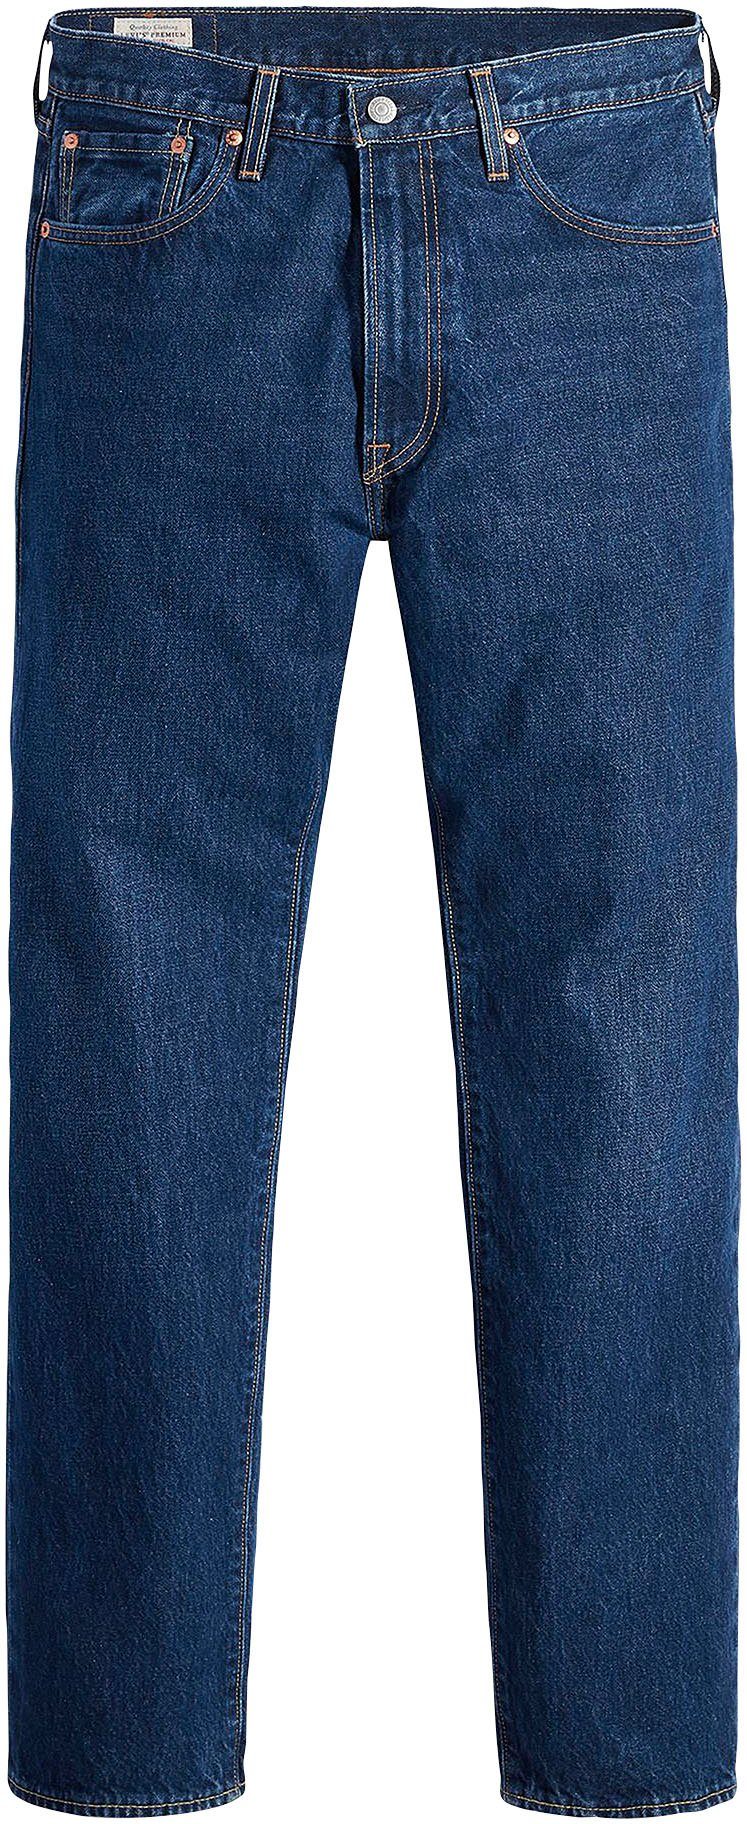 Lederbadge dreams vivid 551Z AUTHENTIC mit Levi's® Straight-Jeans